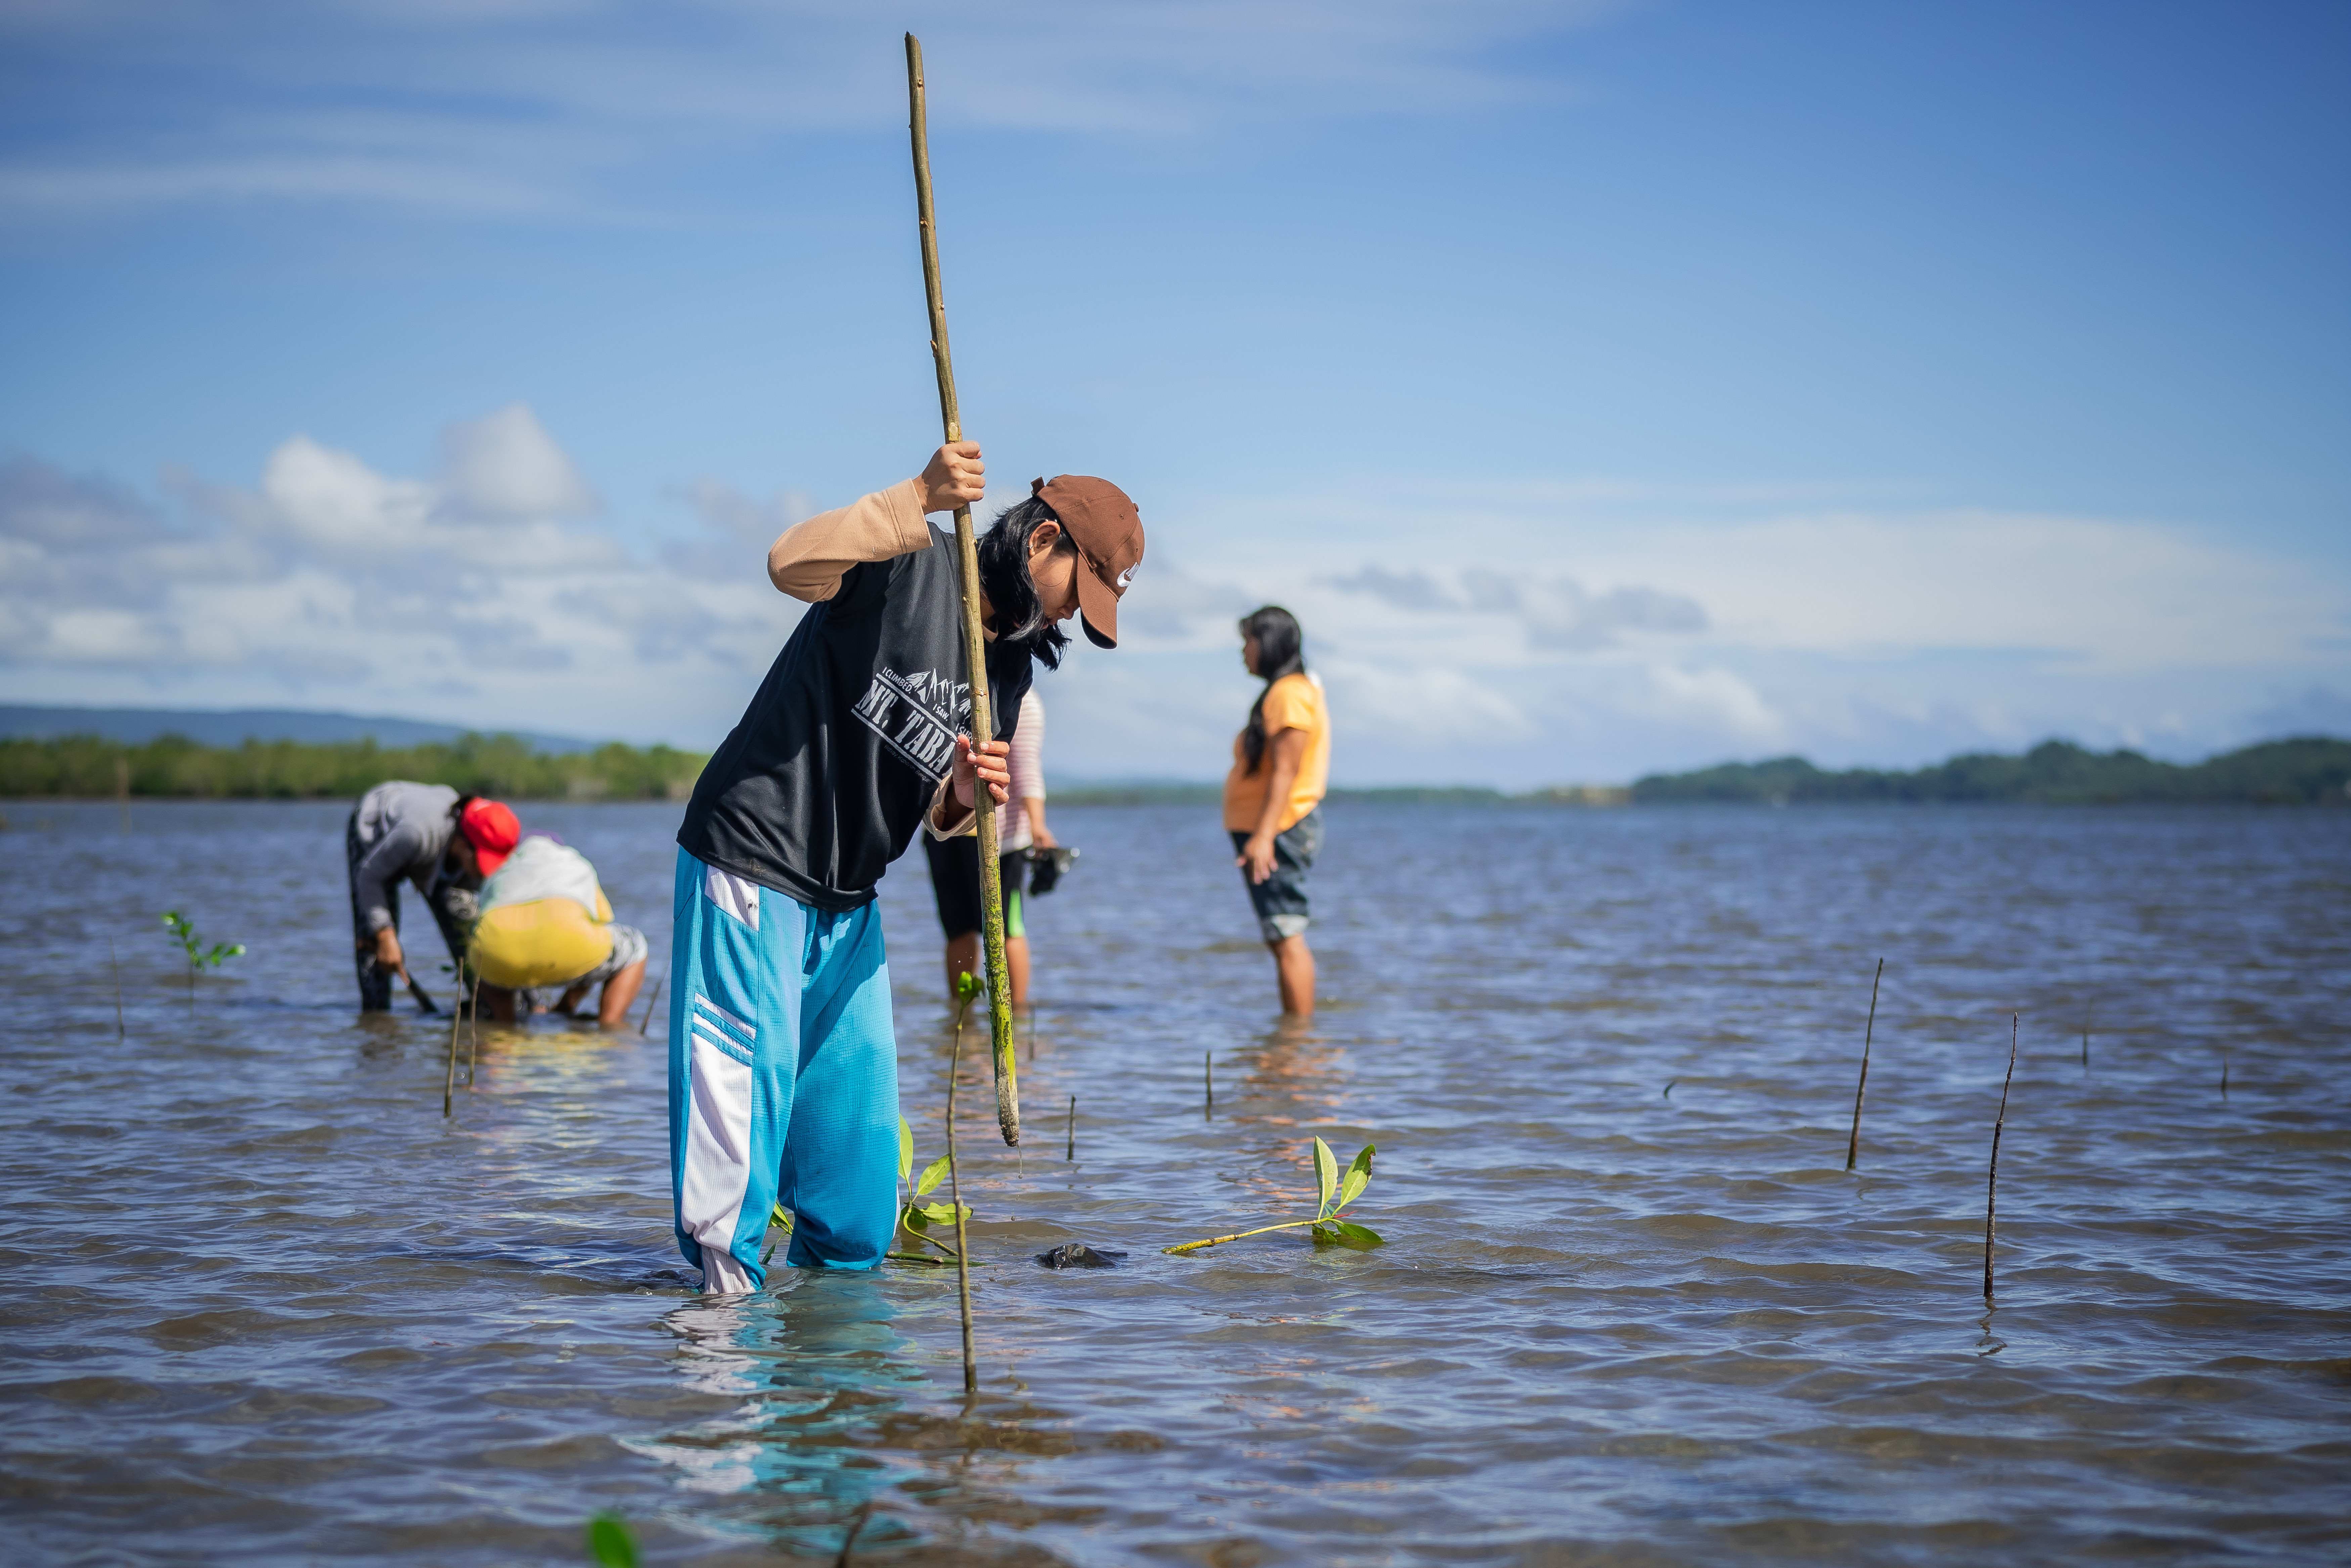 Projektteilnehmerinnen pflanzen junge Mangroven im Wasser, um den Mangrovenwald aufzuforsten (Quelle: Jakob Studnar)